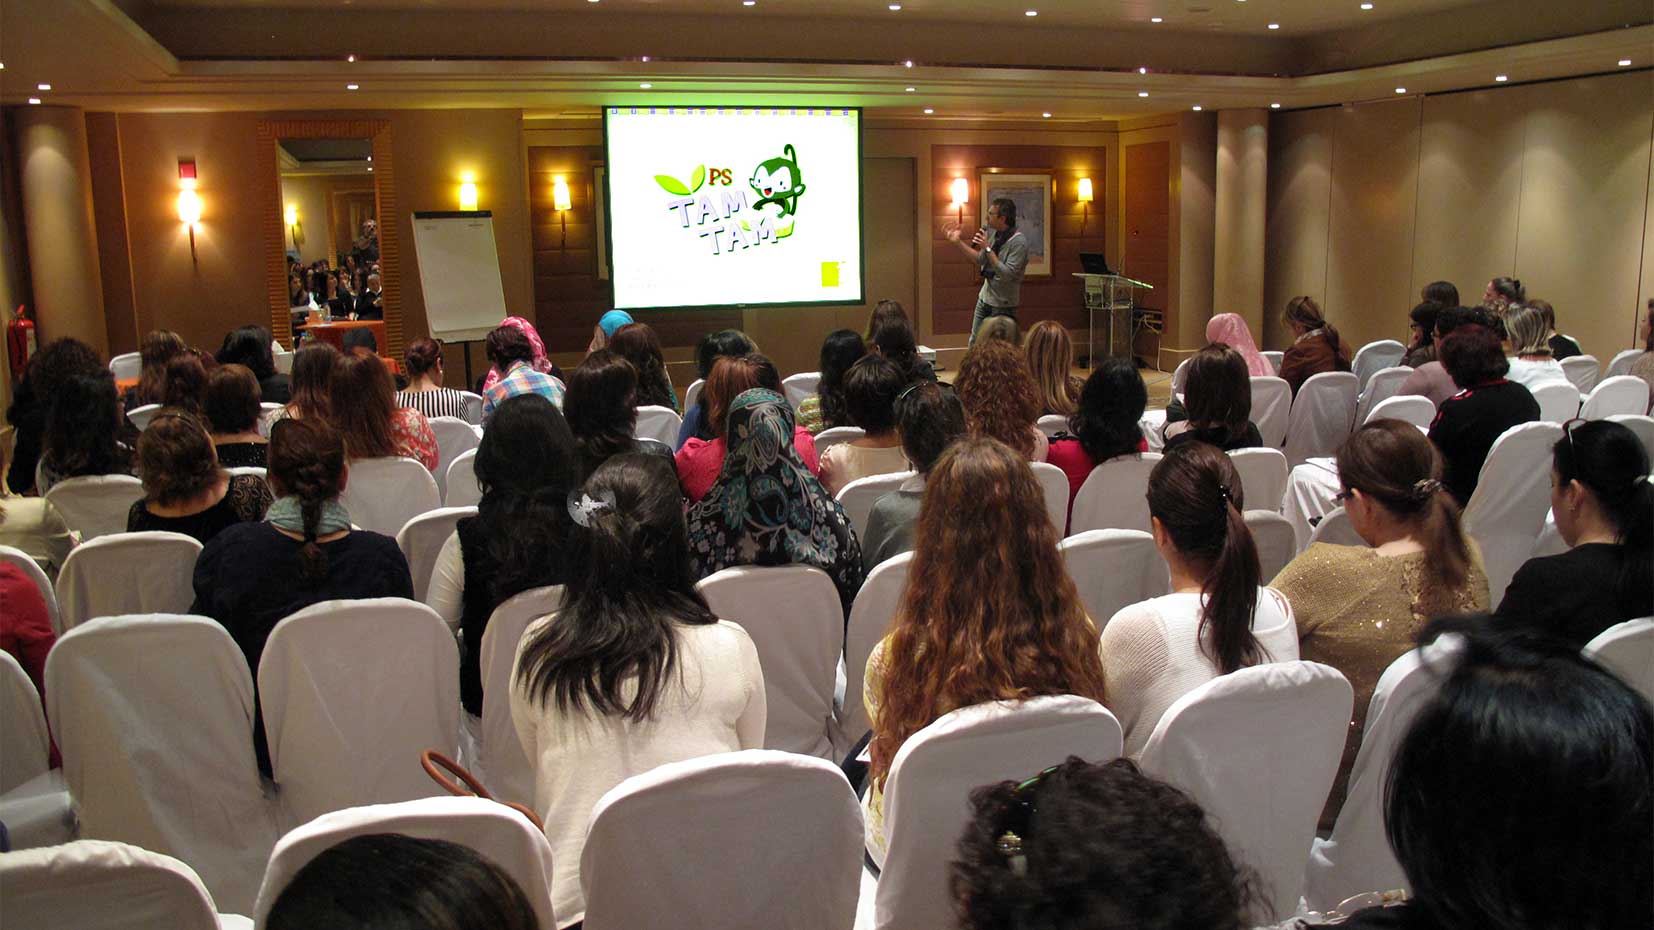 Samir Éditeur - Marwan Abdo-Hanna, directeur de Samir Éditeur, présente la série Tam-Tam PS aux enseignants au Mövenpick à Beyrouth